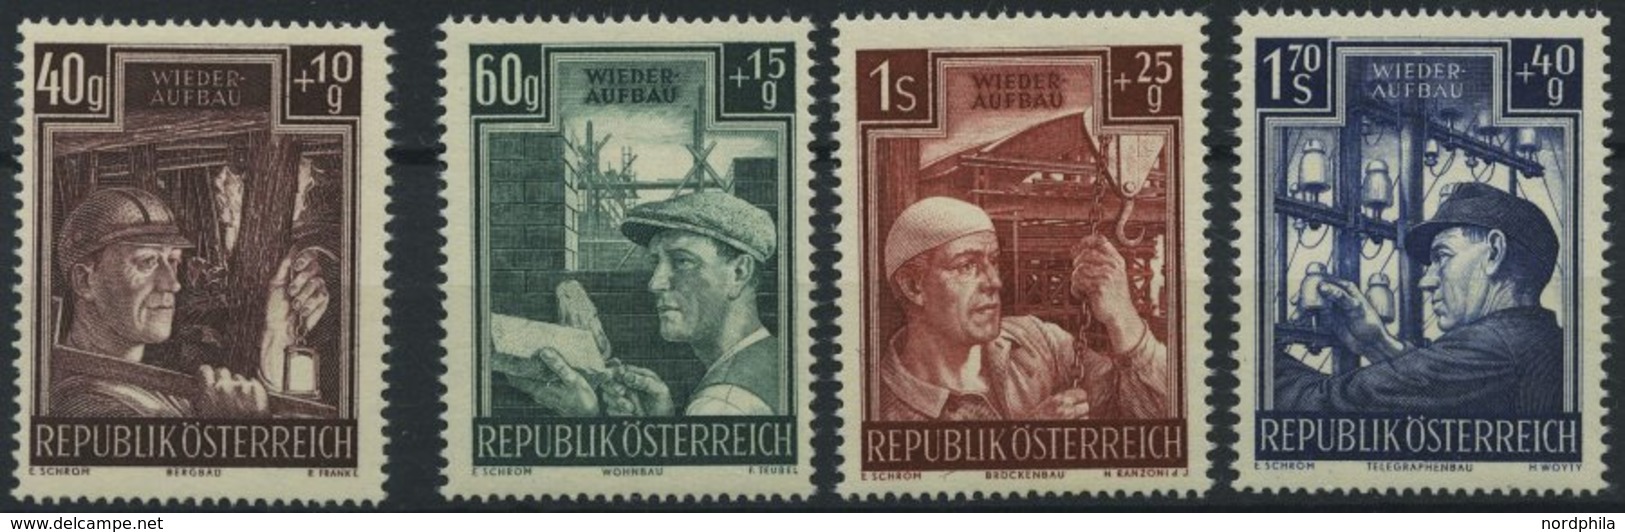 ÖSTERREICH 960-63 **, 1951, Wiederaufbau, Prachtsatz, Mi. 80.- - Gebraucht